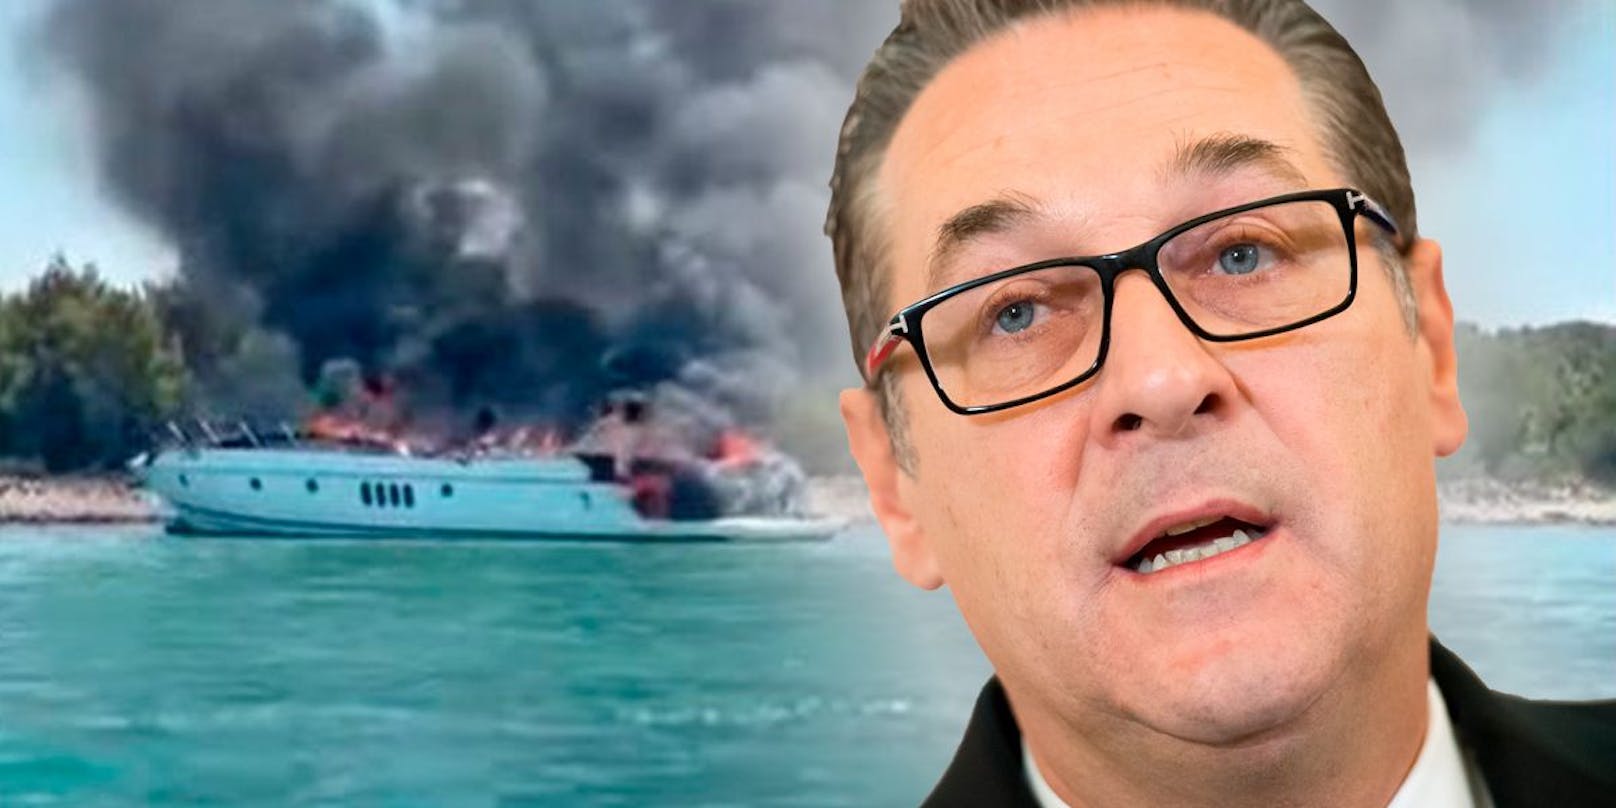 Heinz-Christian Strache soll sich an Bord der brennenden Yacht befunden haben.